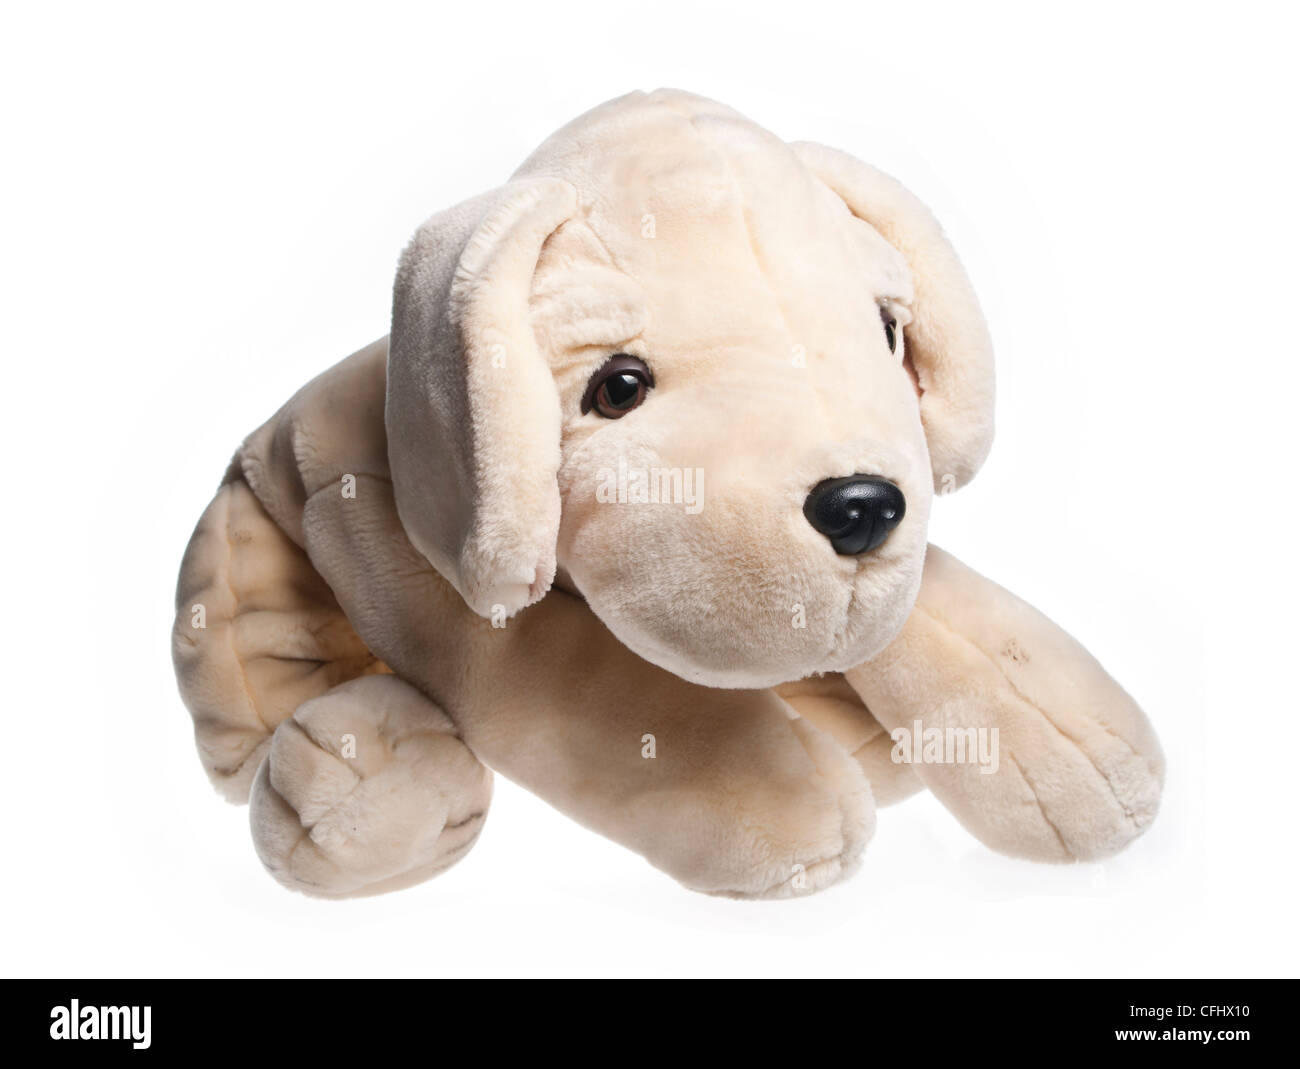 plush dog Stock Photo